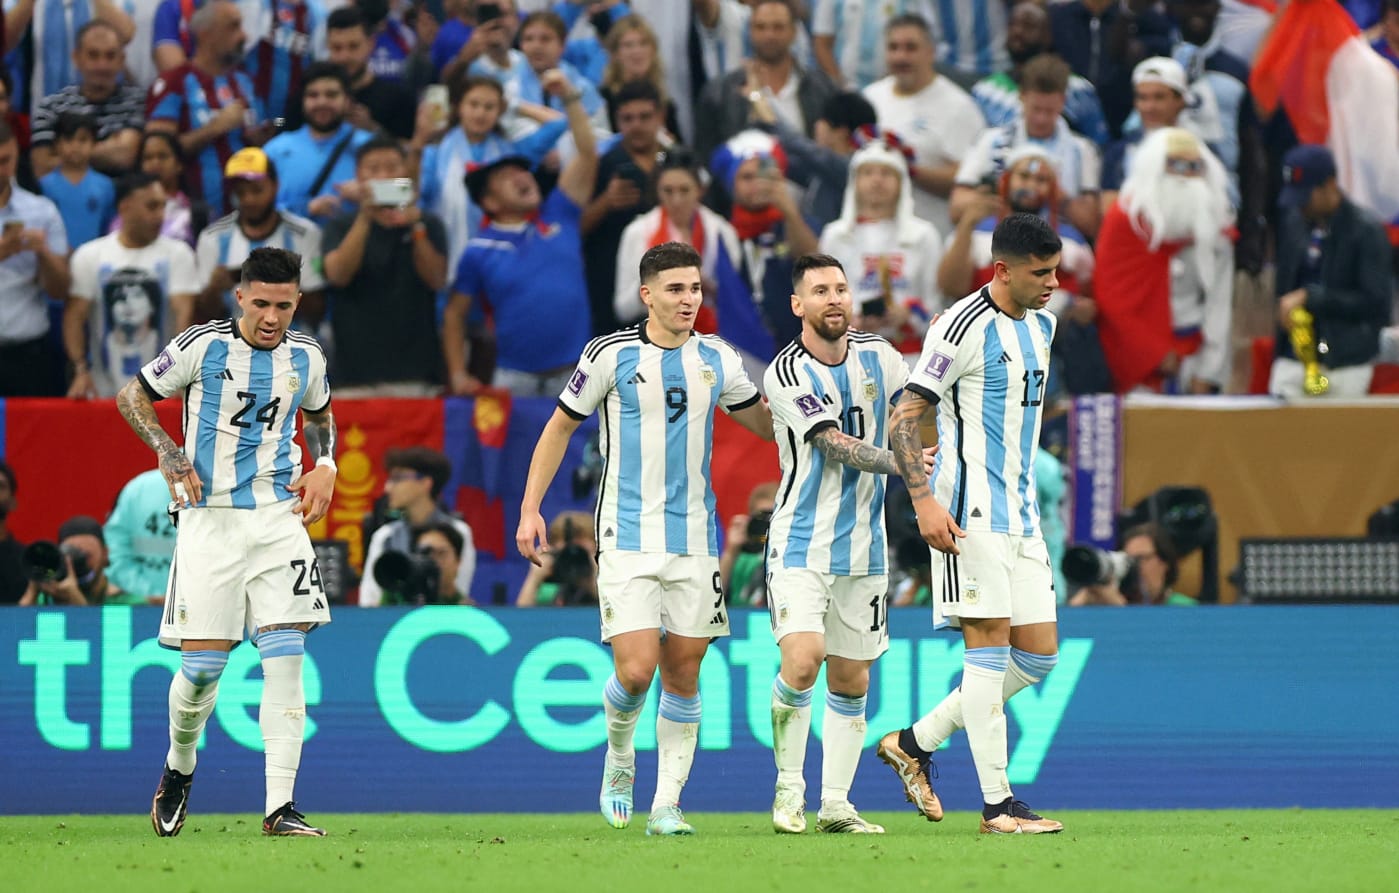 La posible Selección que podría jugar ante Argentina en marzo | Canal Showsport